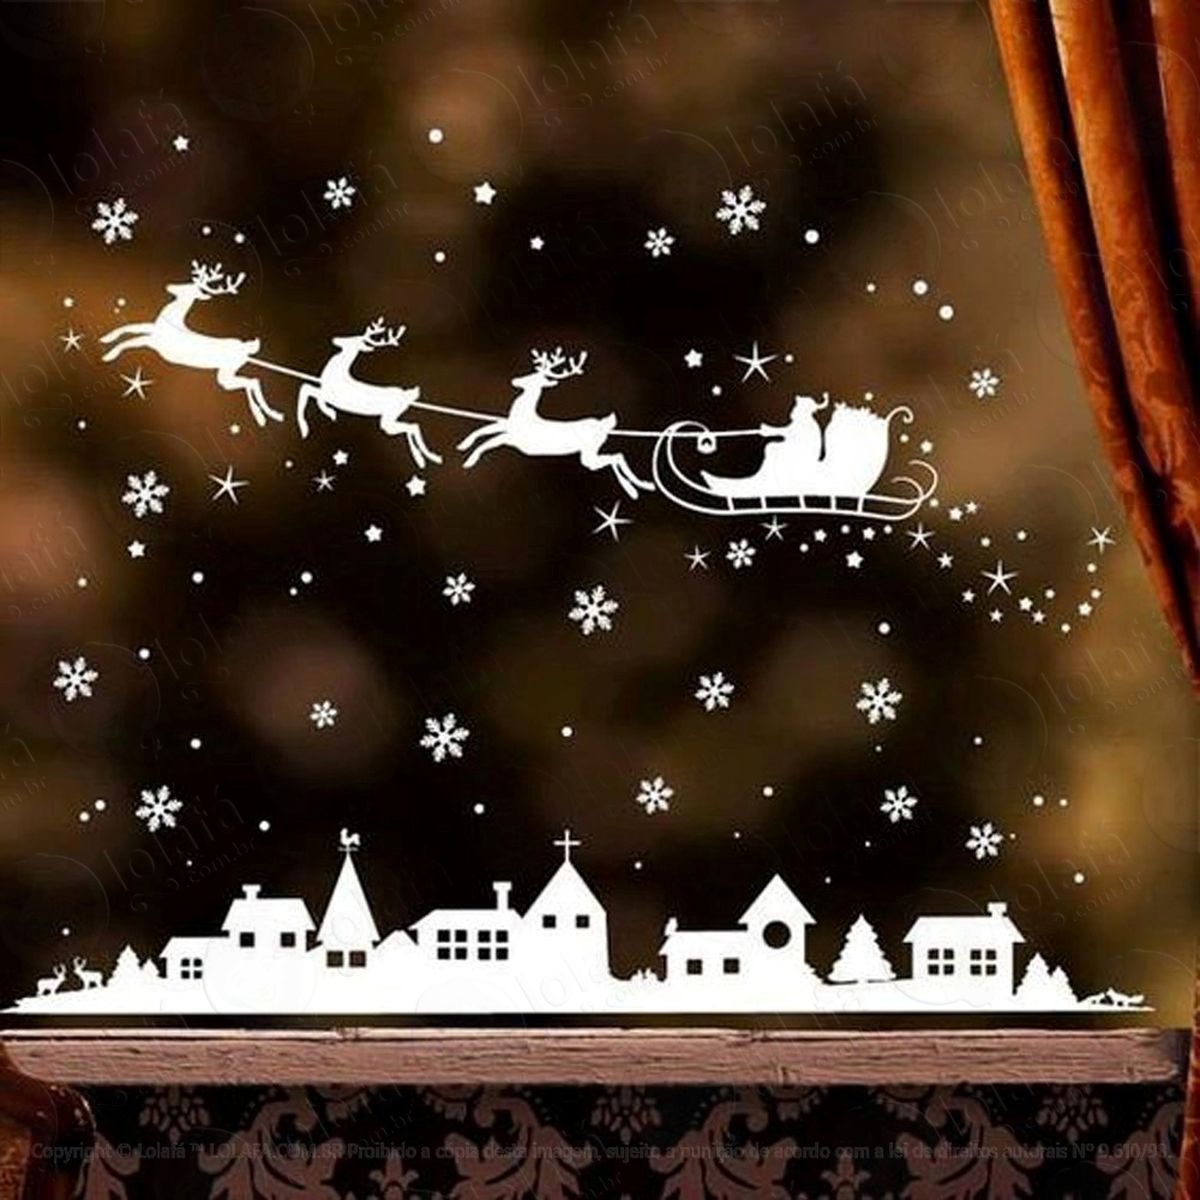 cidade e trenó adesivo de natal para vitrine, parede, porta de vidro - decoração natalina mod:269